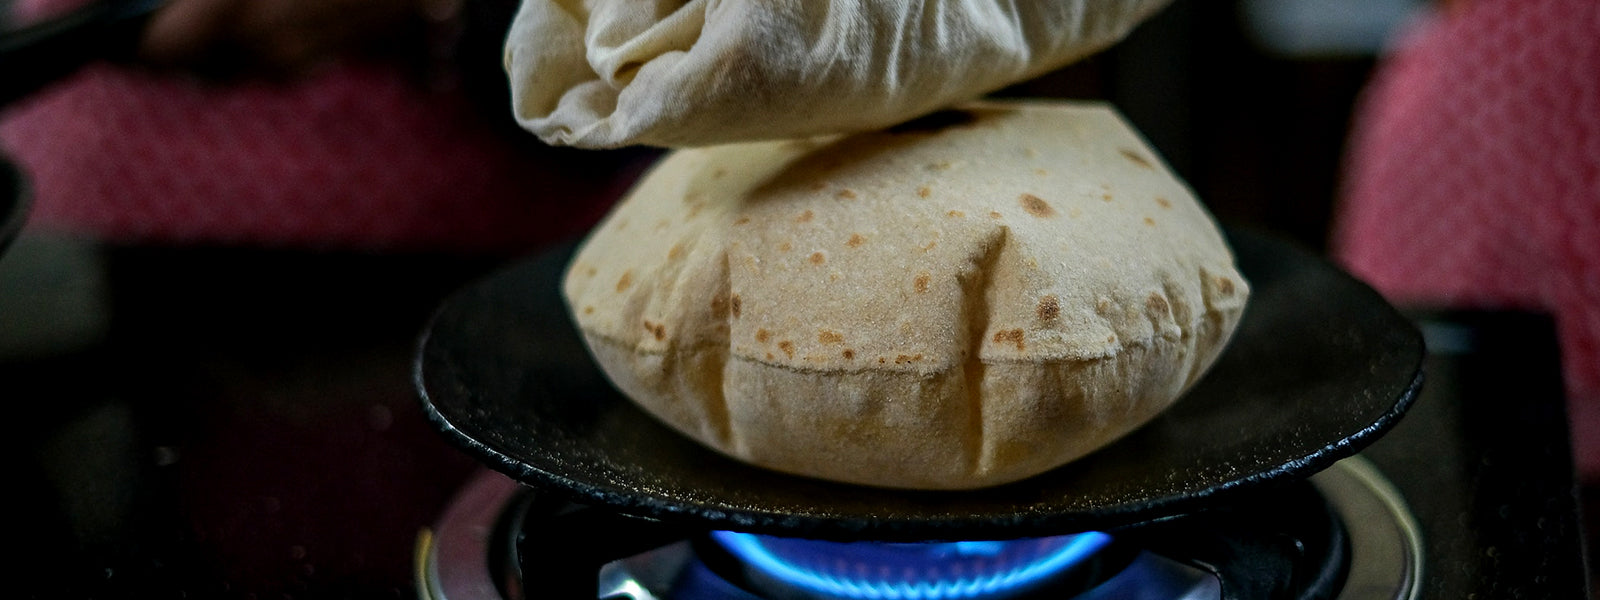 Roti – Tawa chapathi (Indian Bread)